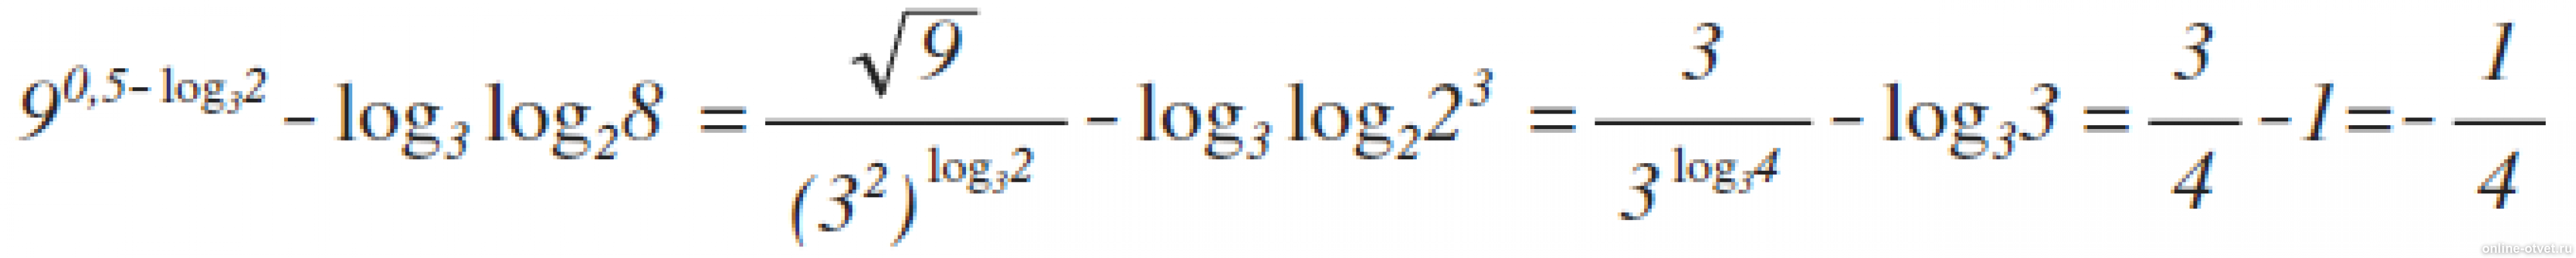 2 log 8 3x 3 3. 9 В степени 0.5 log 3 2 log3. Лог x по основанию корень из 3. Log 25 по основанию корень из 2. Log2 log2 корень 4 степени из 2.